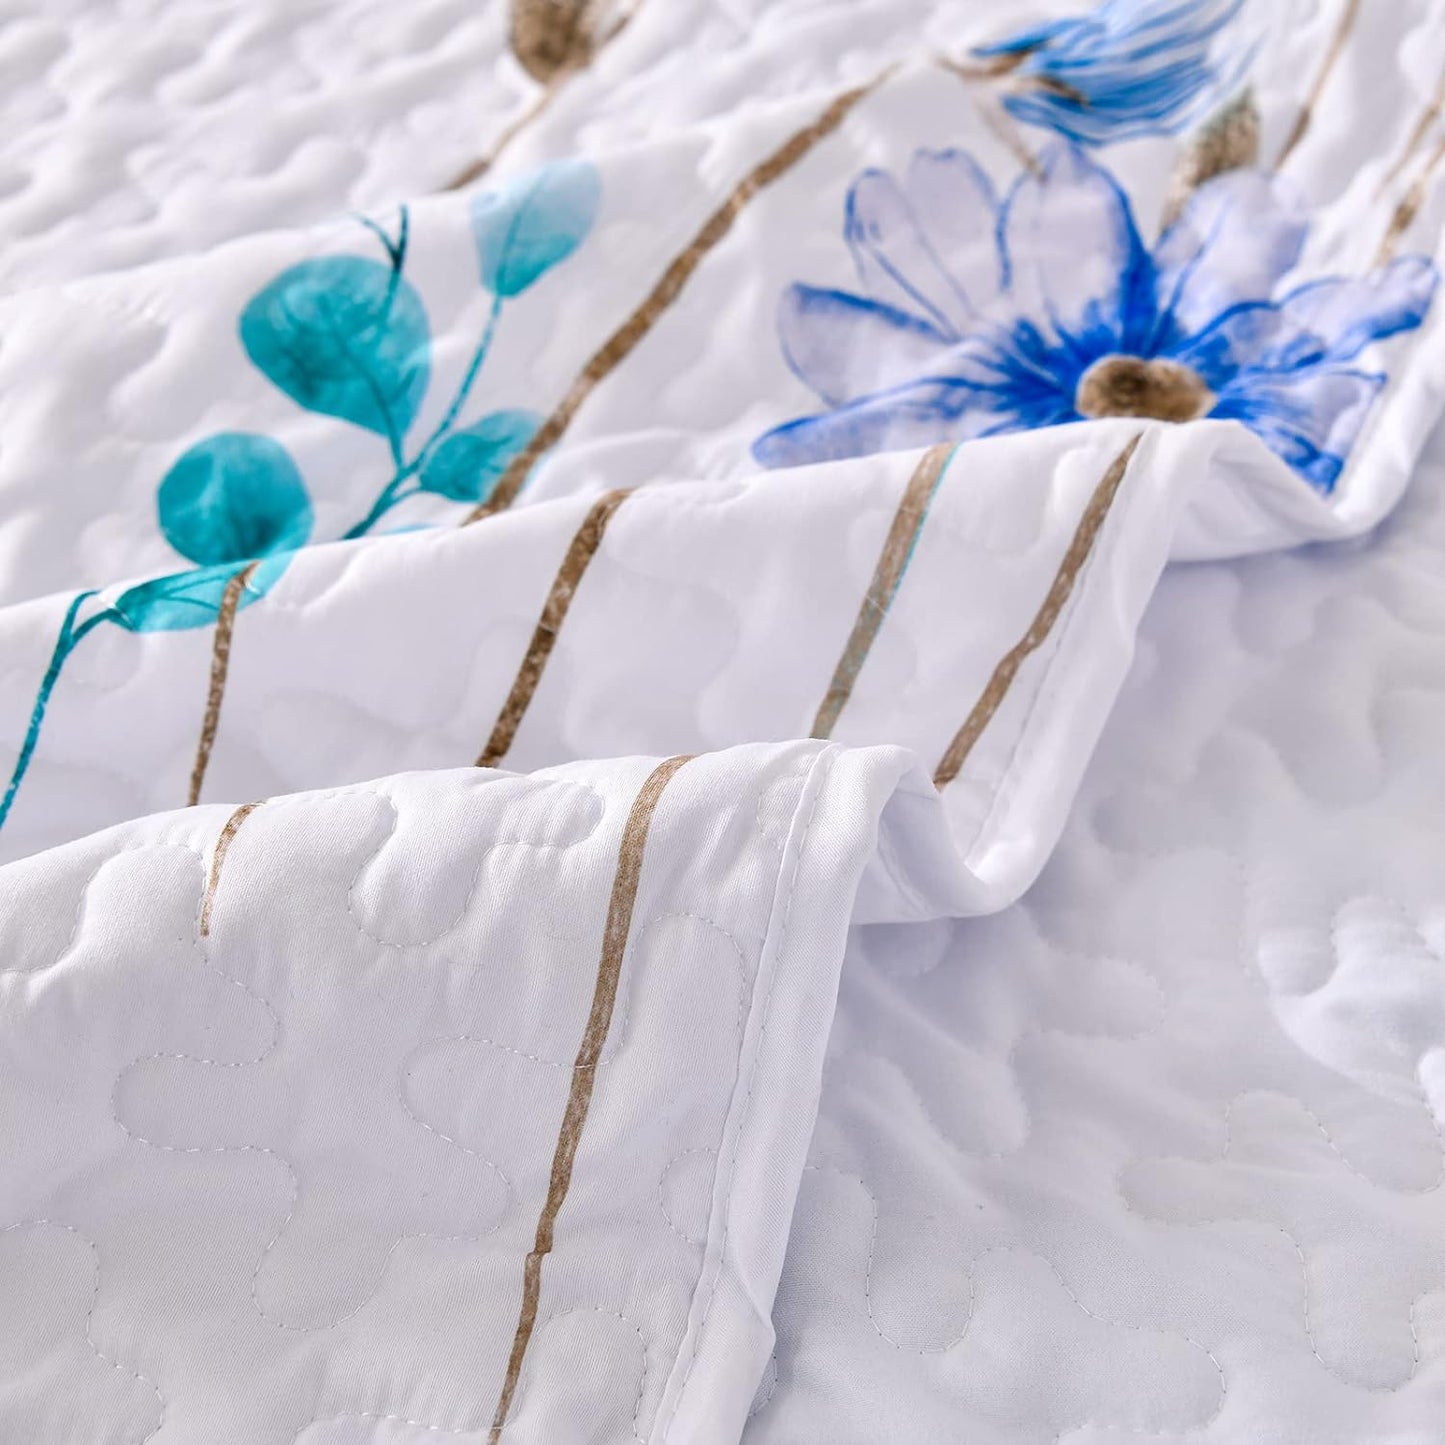 Blue Wild Flowers 3 Piece Bedding Quilt Set